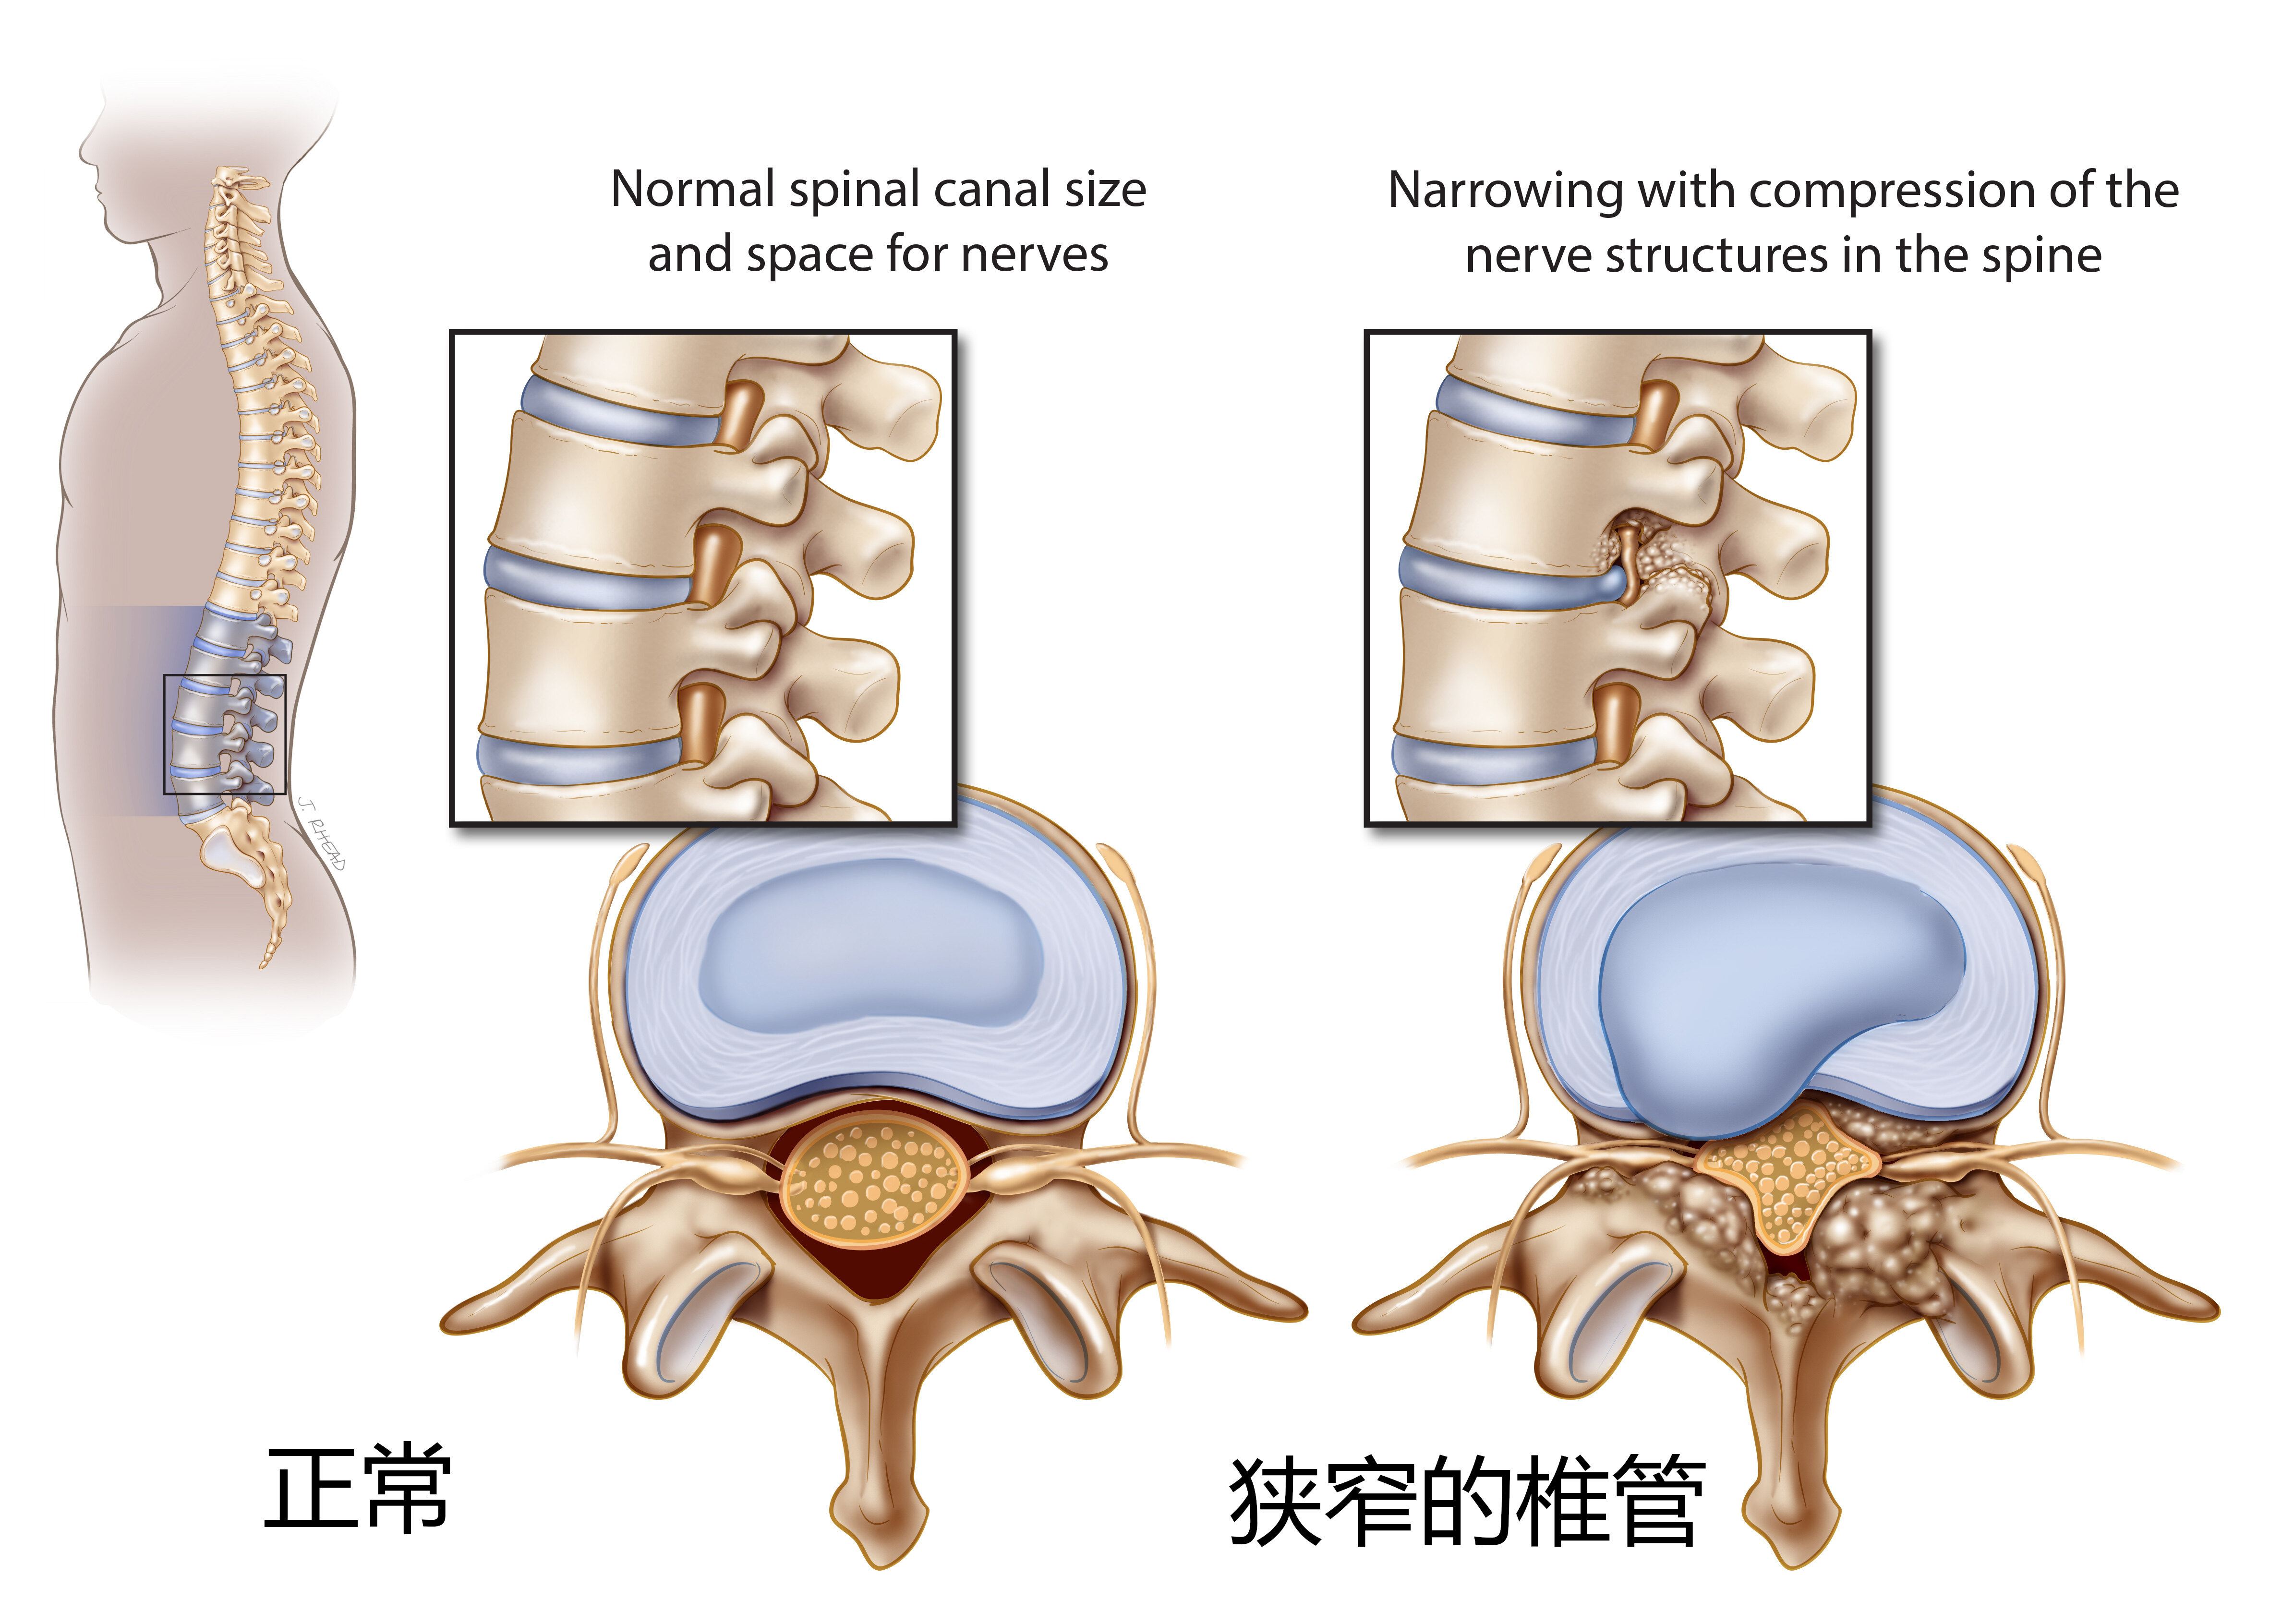 腰椎椎管矢状径图片